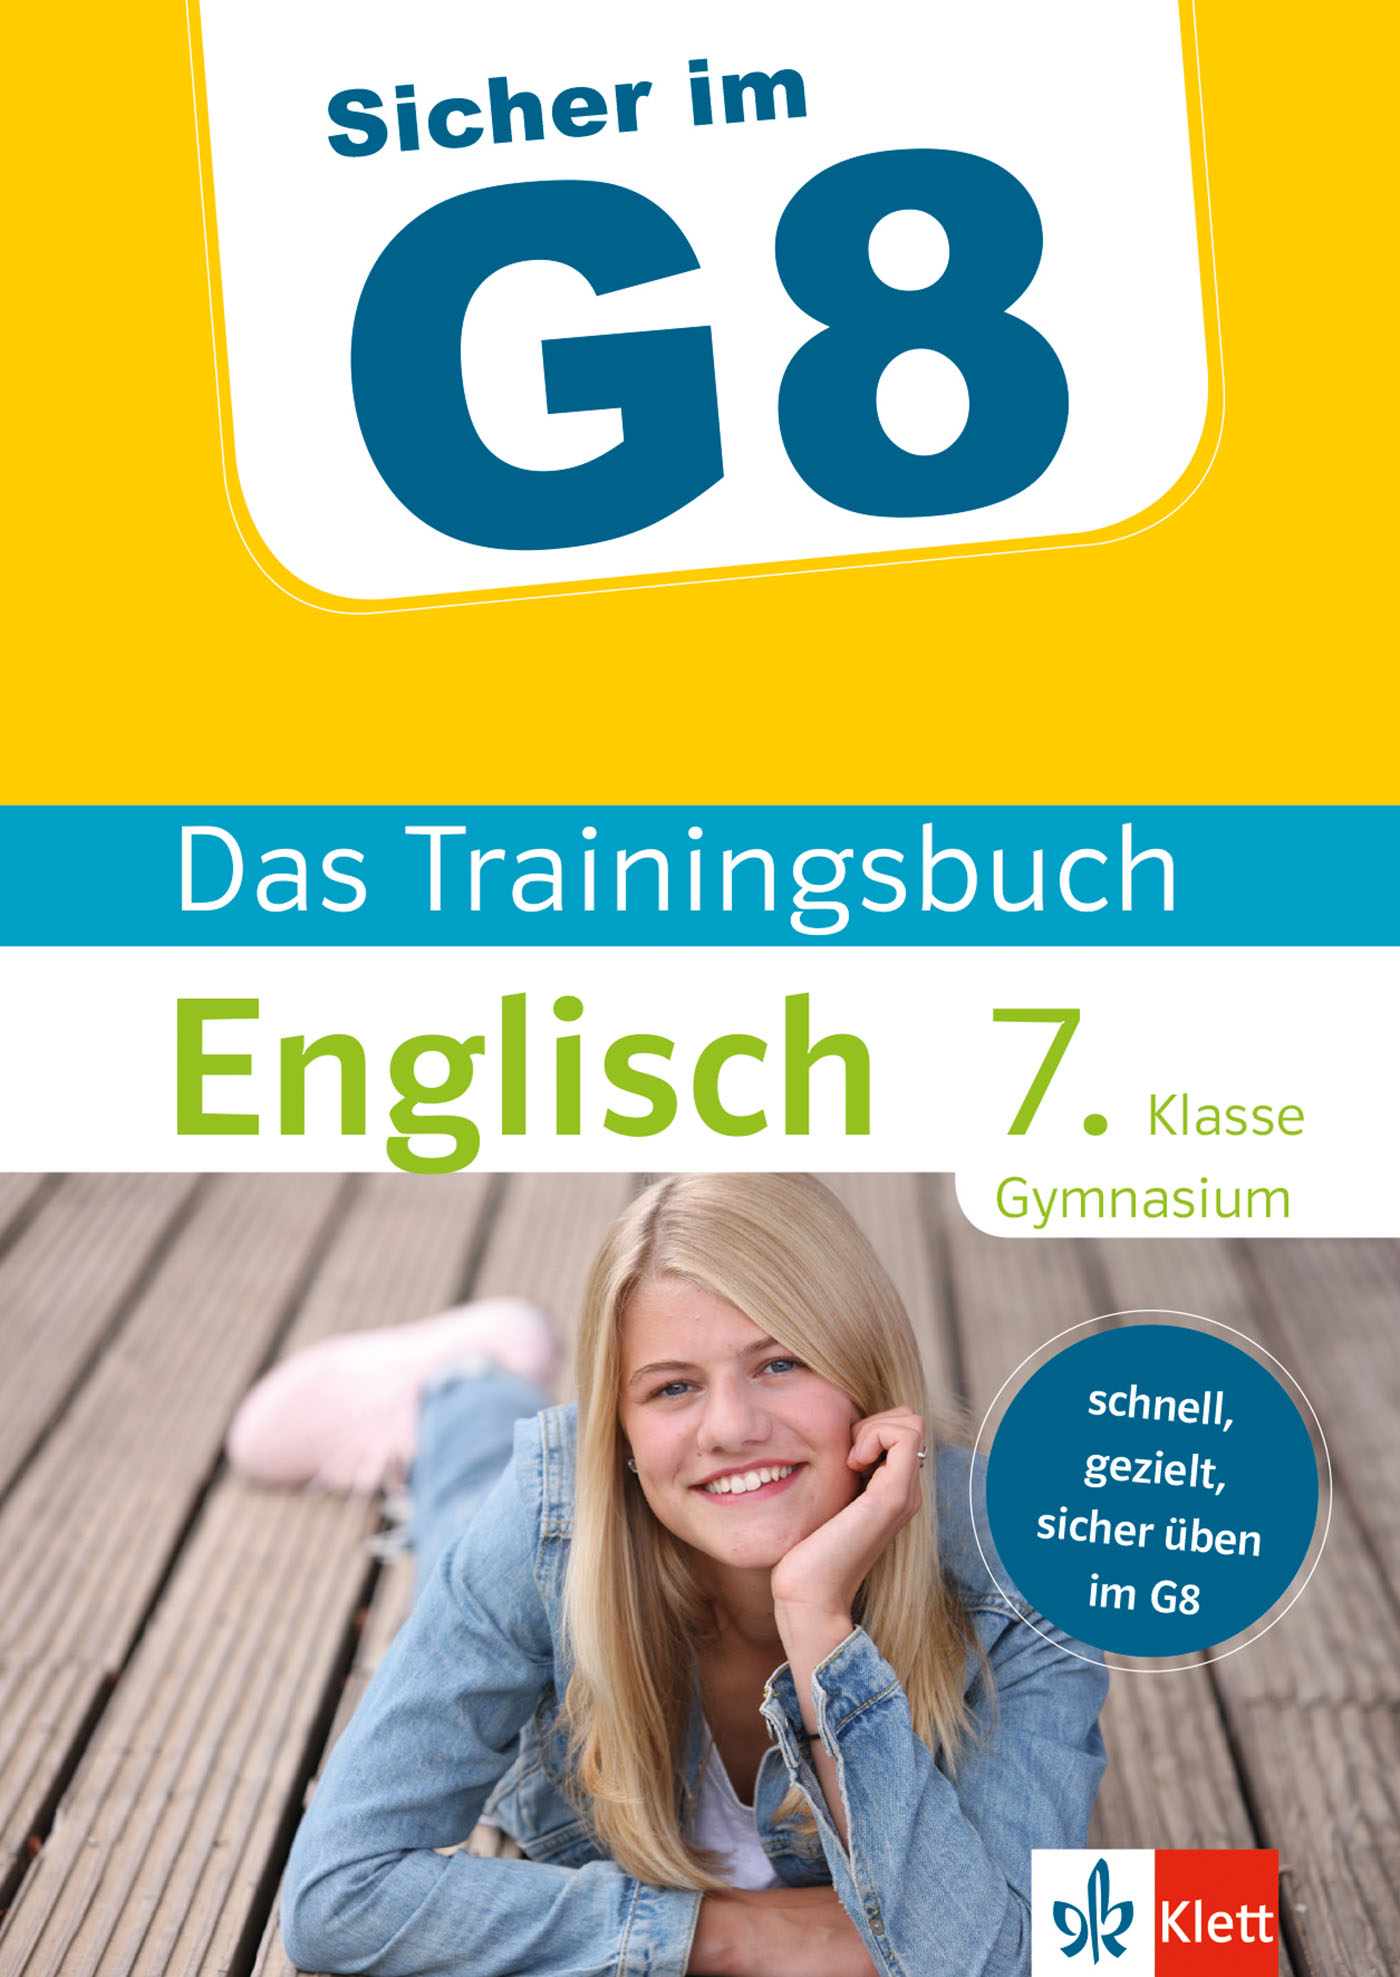 Klett Sicher im G8 Das Trainingsbuch Englisch 7. Klasse Gymnasium